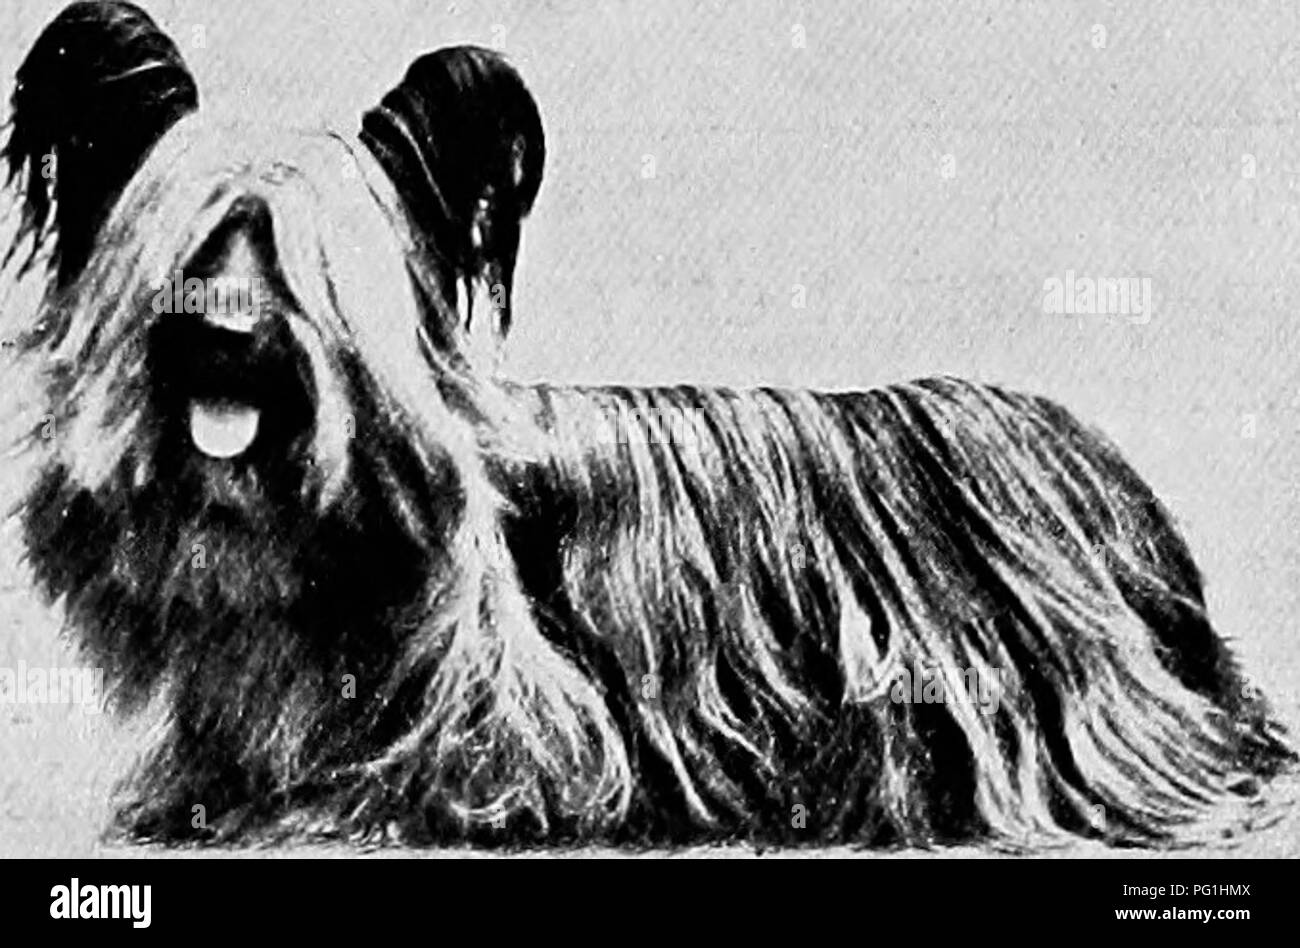 Das neue Buch Der Hund; eine umfassende natürliche Geschichte der  britischen Hunden und ihren ausländischen Verwandten, mit Kapiteln, die auf  dem Gesetz, Zucht, Zwinger, Management, und tierärztliche Behandlung. Hunde.  Frau. F.A.R.